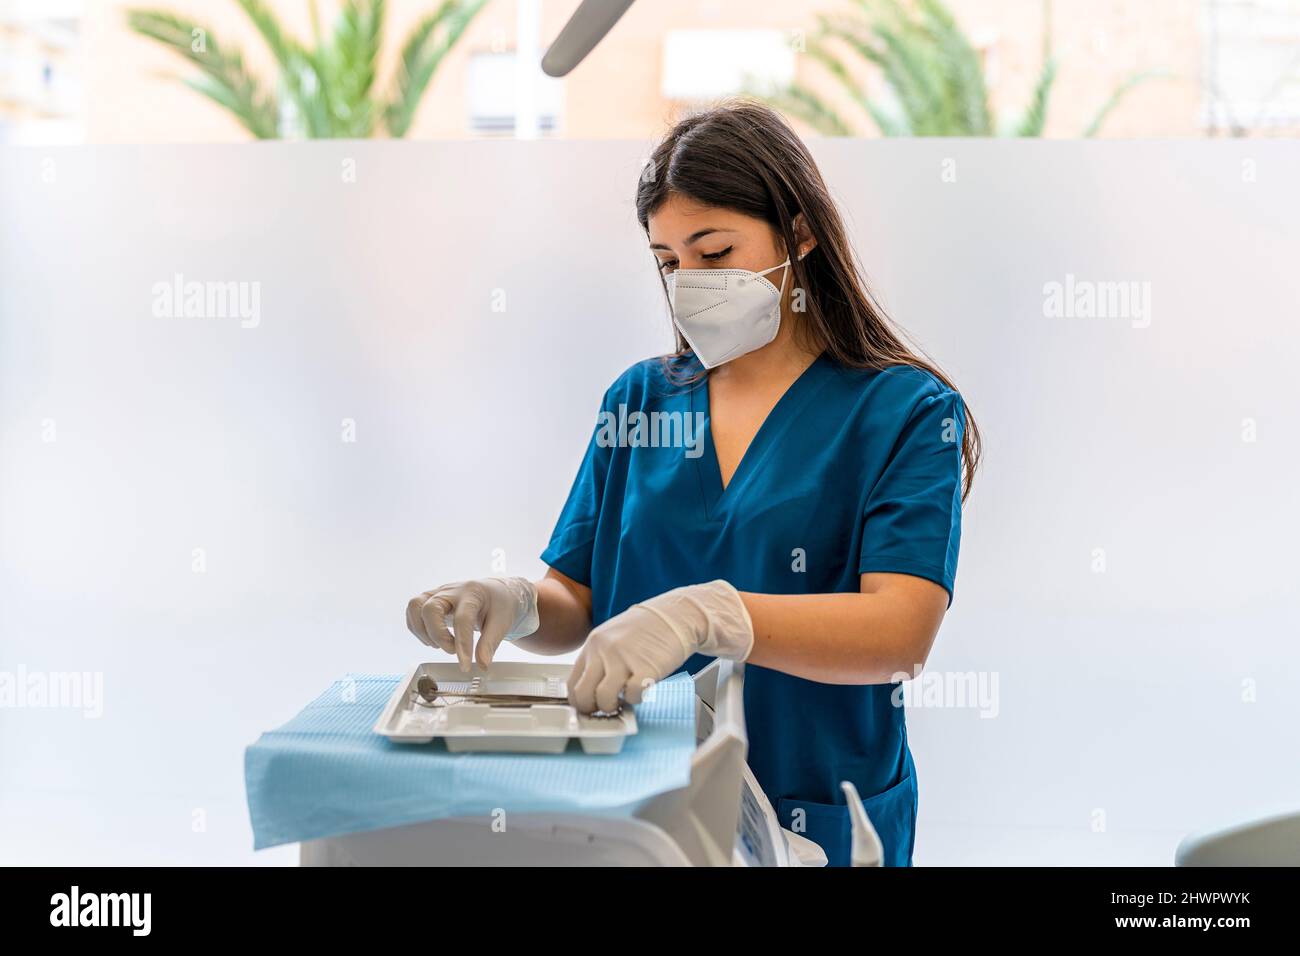 Enfermero que lleva mascarilla protectora arreglando equipo dental en la clínica médica Foto de stock